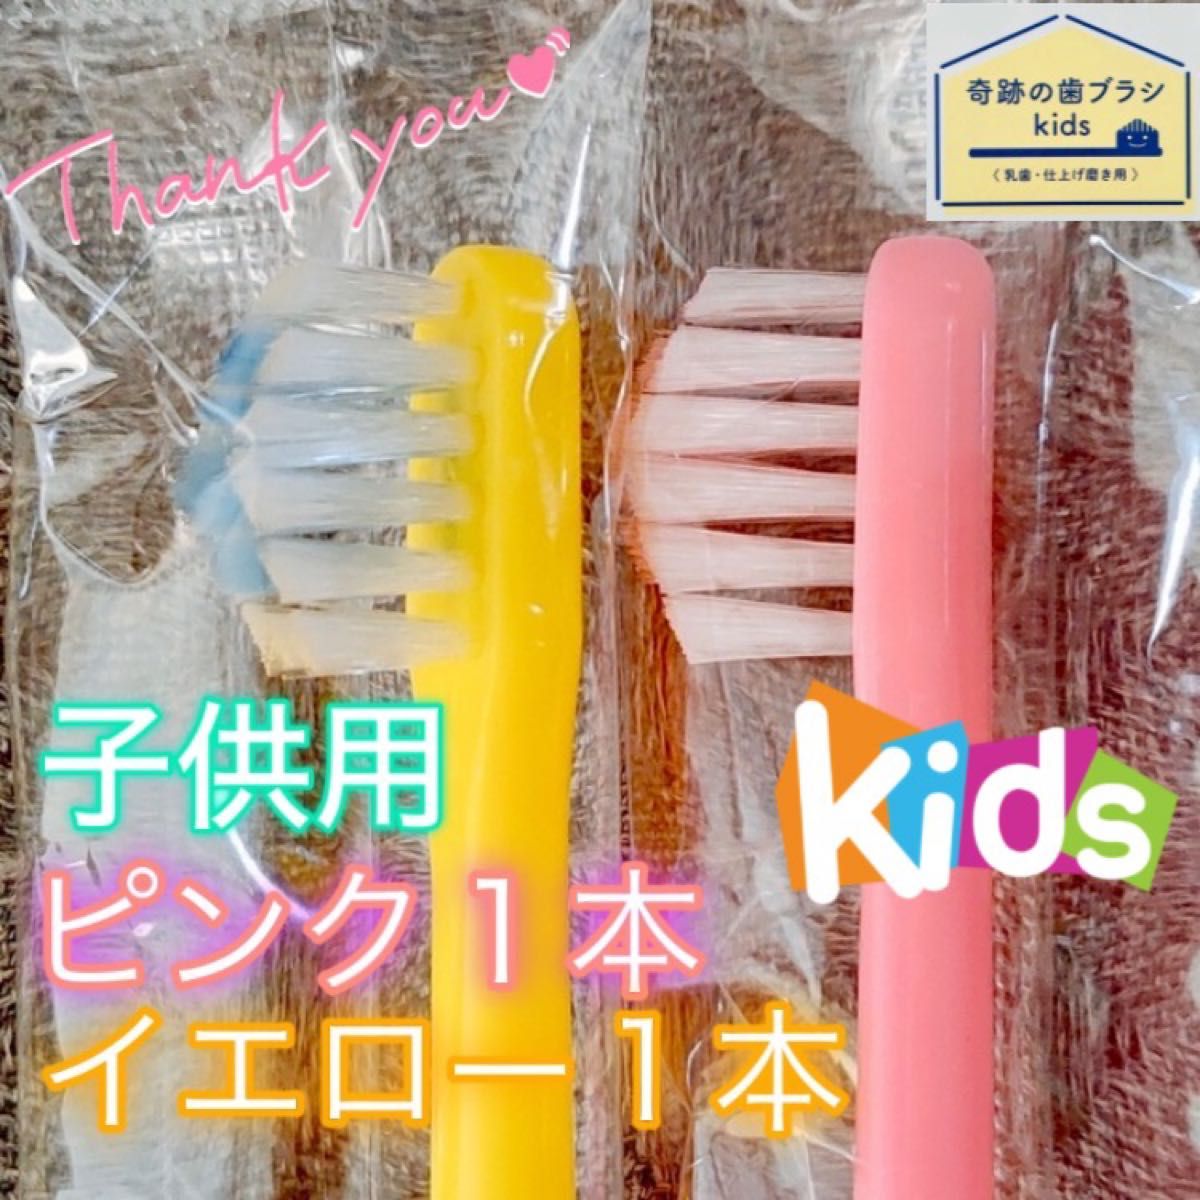 【新品】奇跡の歯ブラシ 子供用 ピンク & イエロー 公式正規品〔2本セット〕